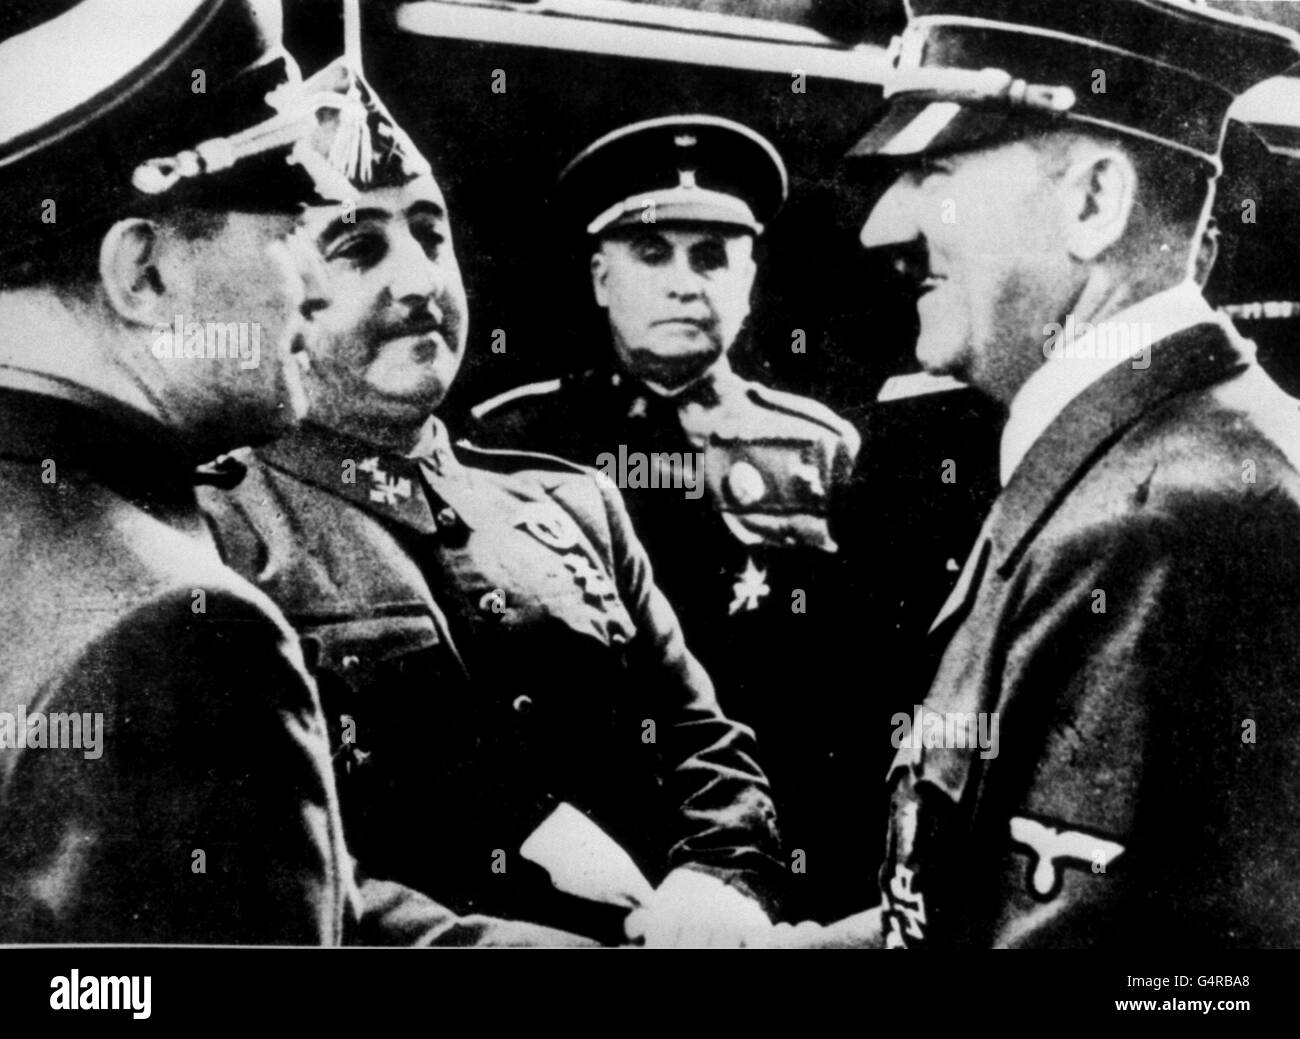 PA News photo circa 1940: Une photo enregistrant une réunion sur le Harayya, frontière franco-espagnole, entre Adolf Hitler (r), le leader allemand, et le général Franco (2ème l) de l'Espagne. Banque D'Images